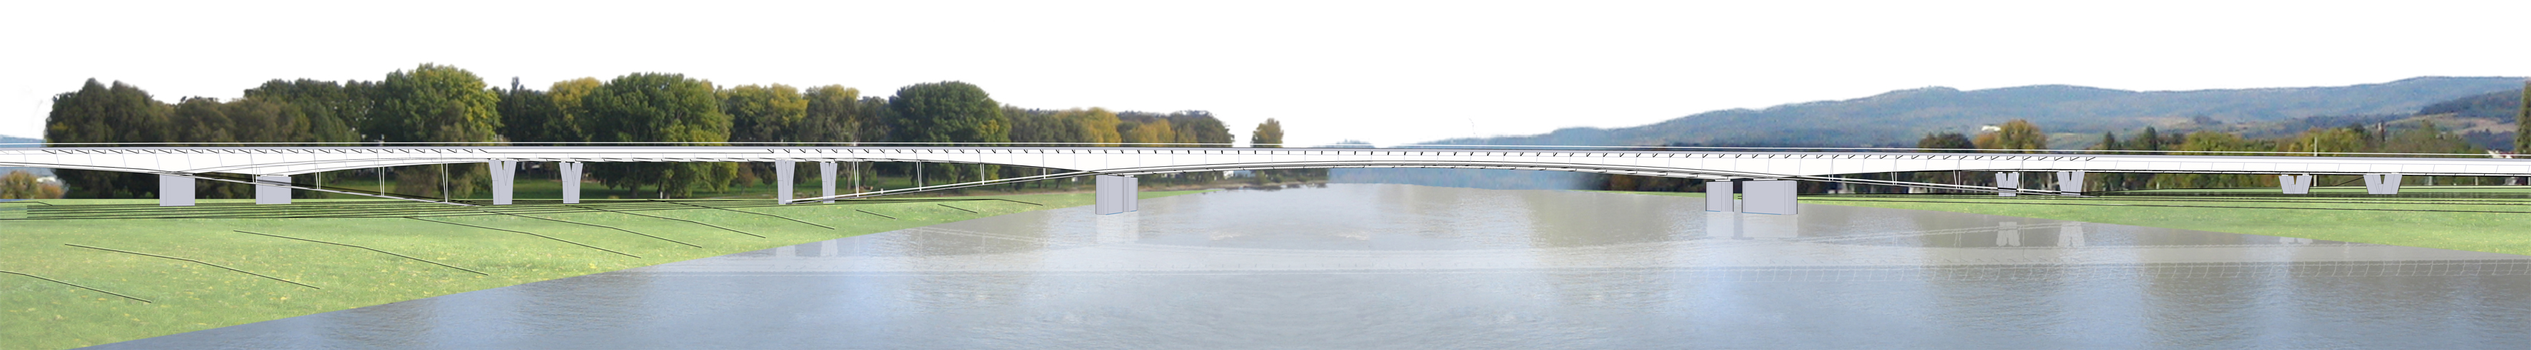 Rund fünf Jahre Bauzeit sind für den Neubau der Autobahnbrücke A643 geplant, der auf 1.280 m Länge Mainz mit Wiesbaden verbindet.
: Rund fünf Jahre Bauzeit sind für den Neubau der Autobahnbrücke A643 geplant, der auf 1.280 m Länge Mainz mit Wiesbaden verbindet.